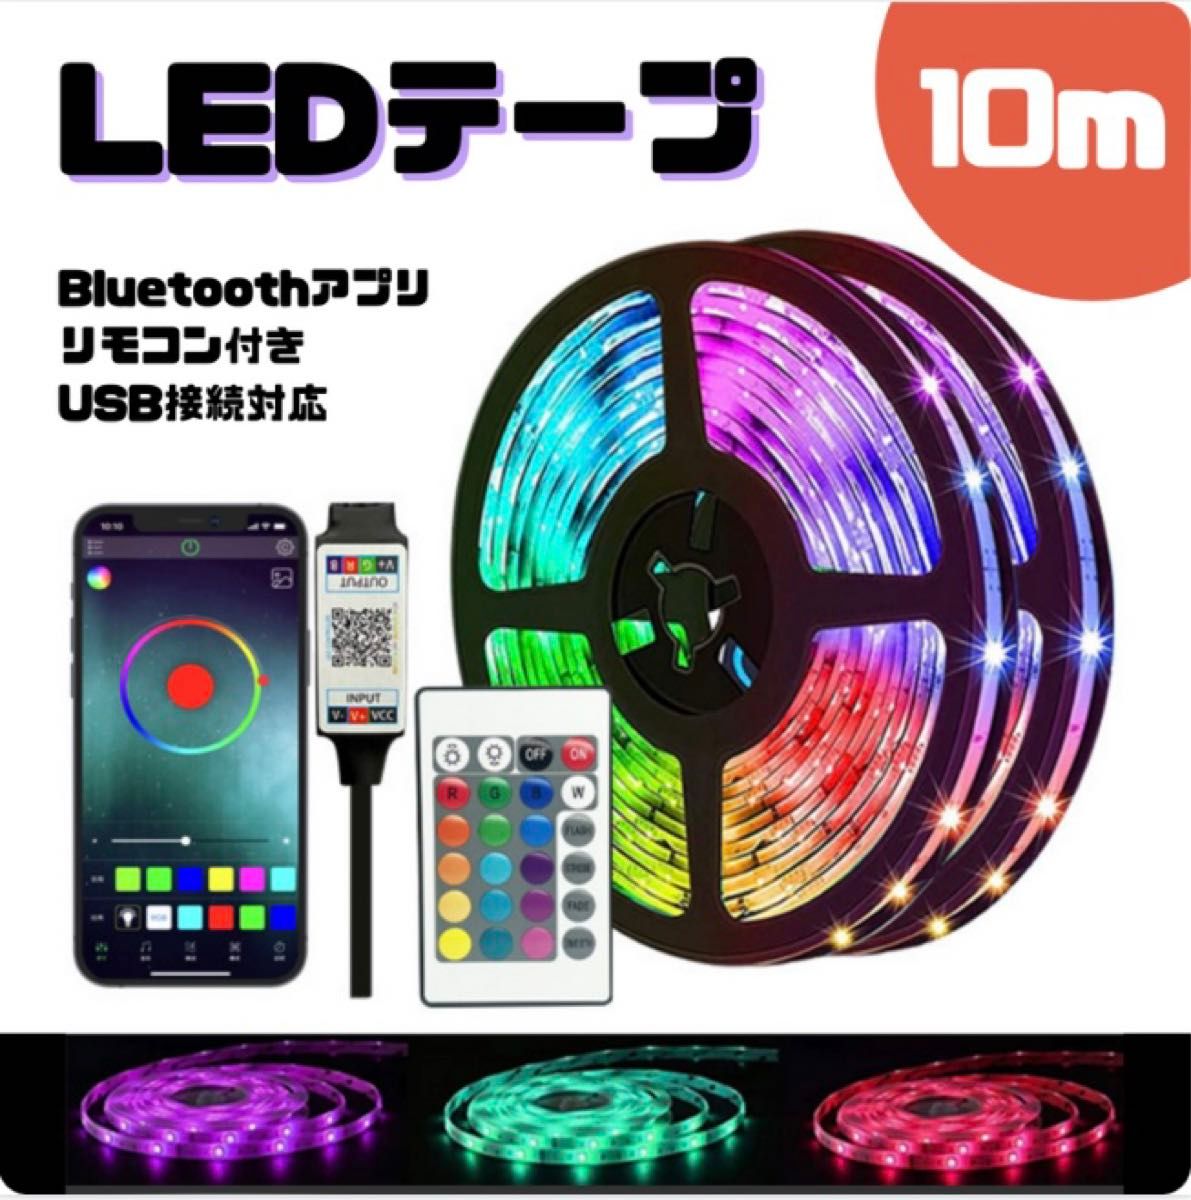 LEDライト 19 テープ テープライト 照明 10m RBG USB LEDテープ リモコン付 間接照明 店内装飾 インテリア